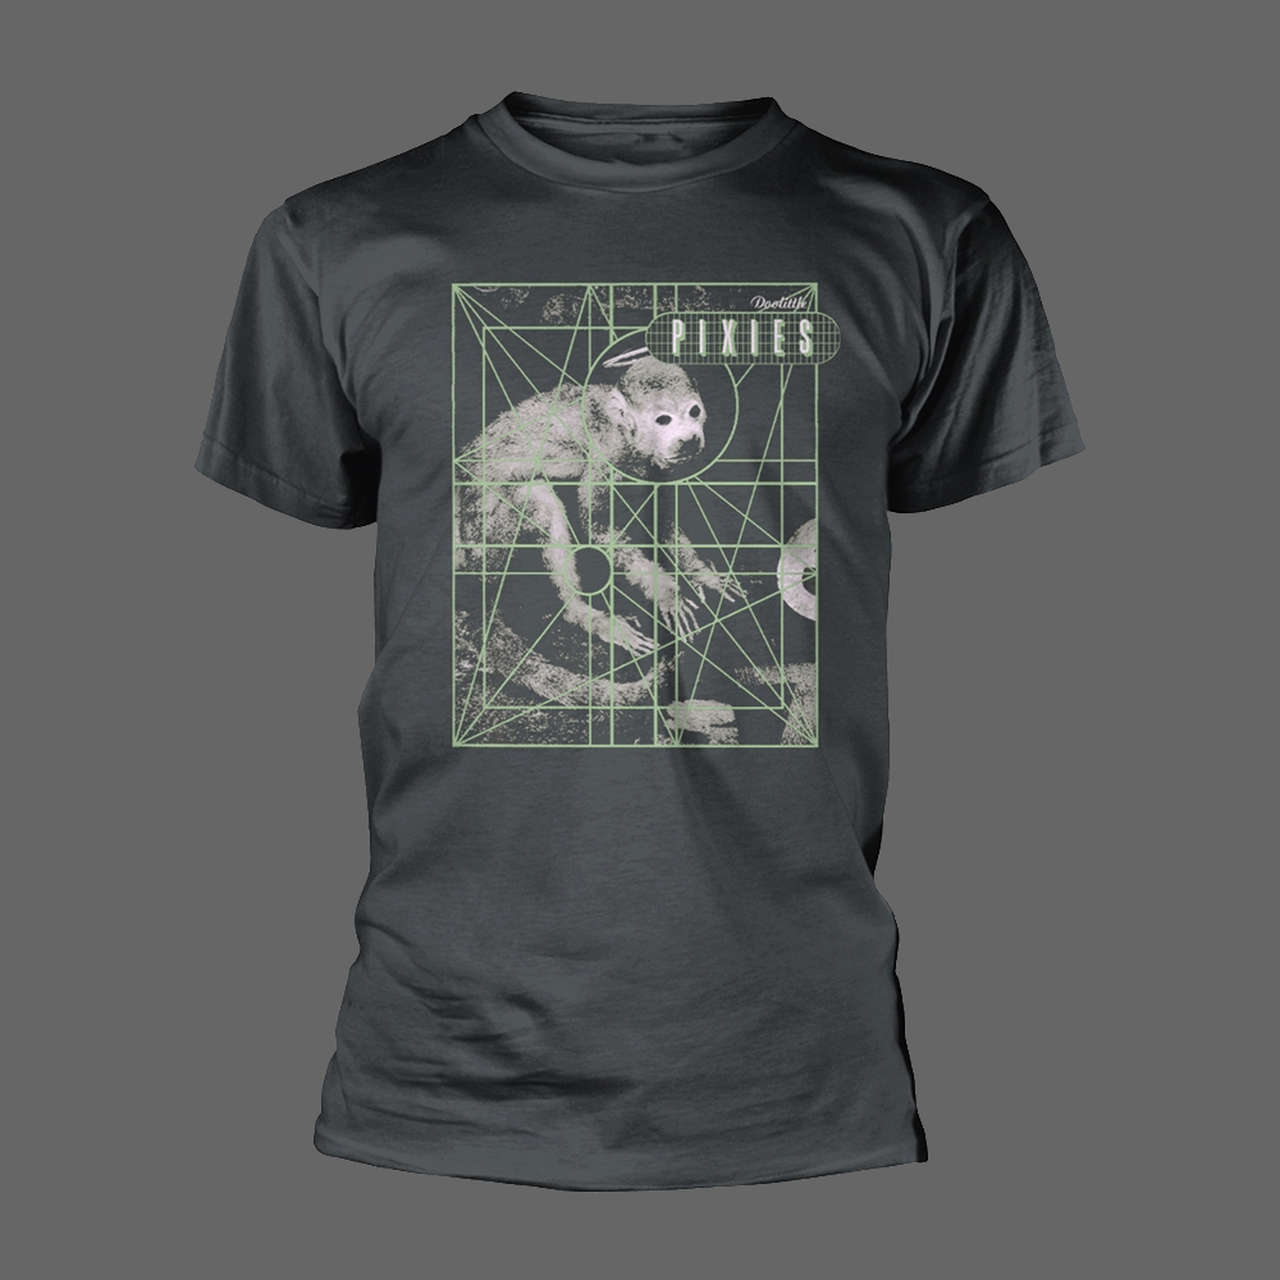 Pixies - Doolittle (Grid) (T-Shirt)